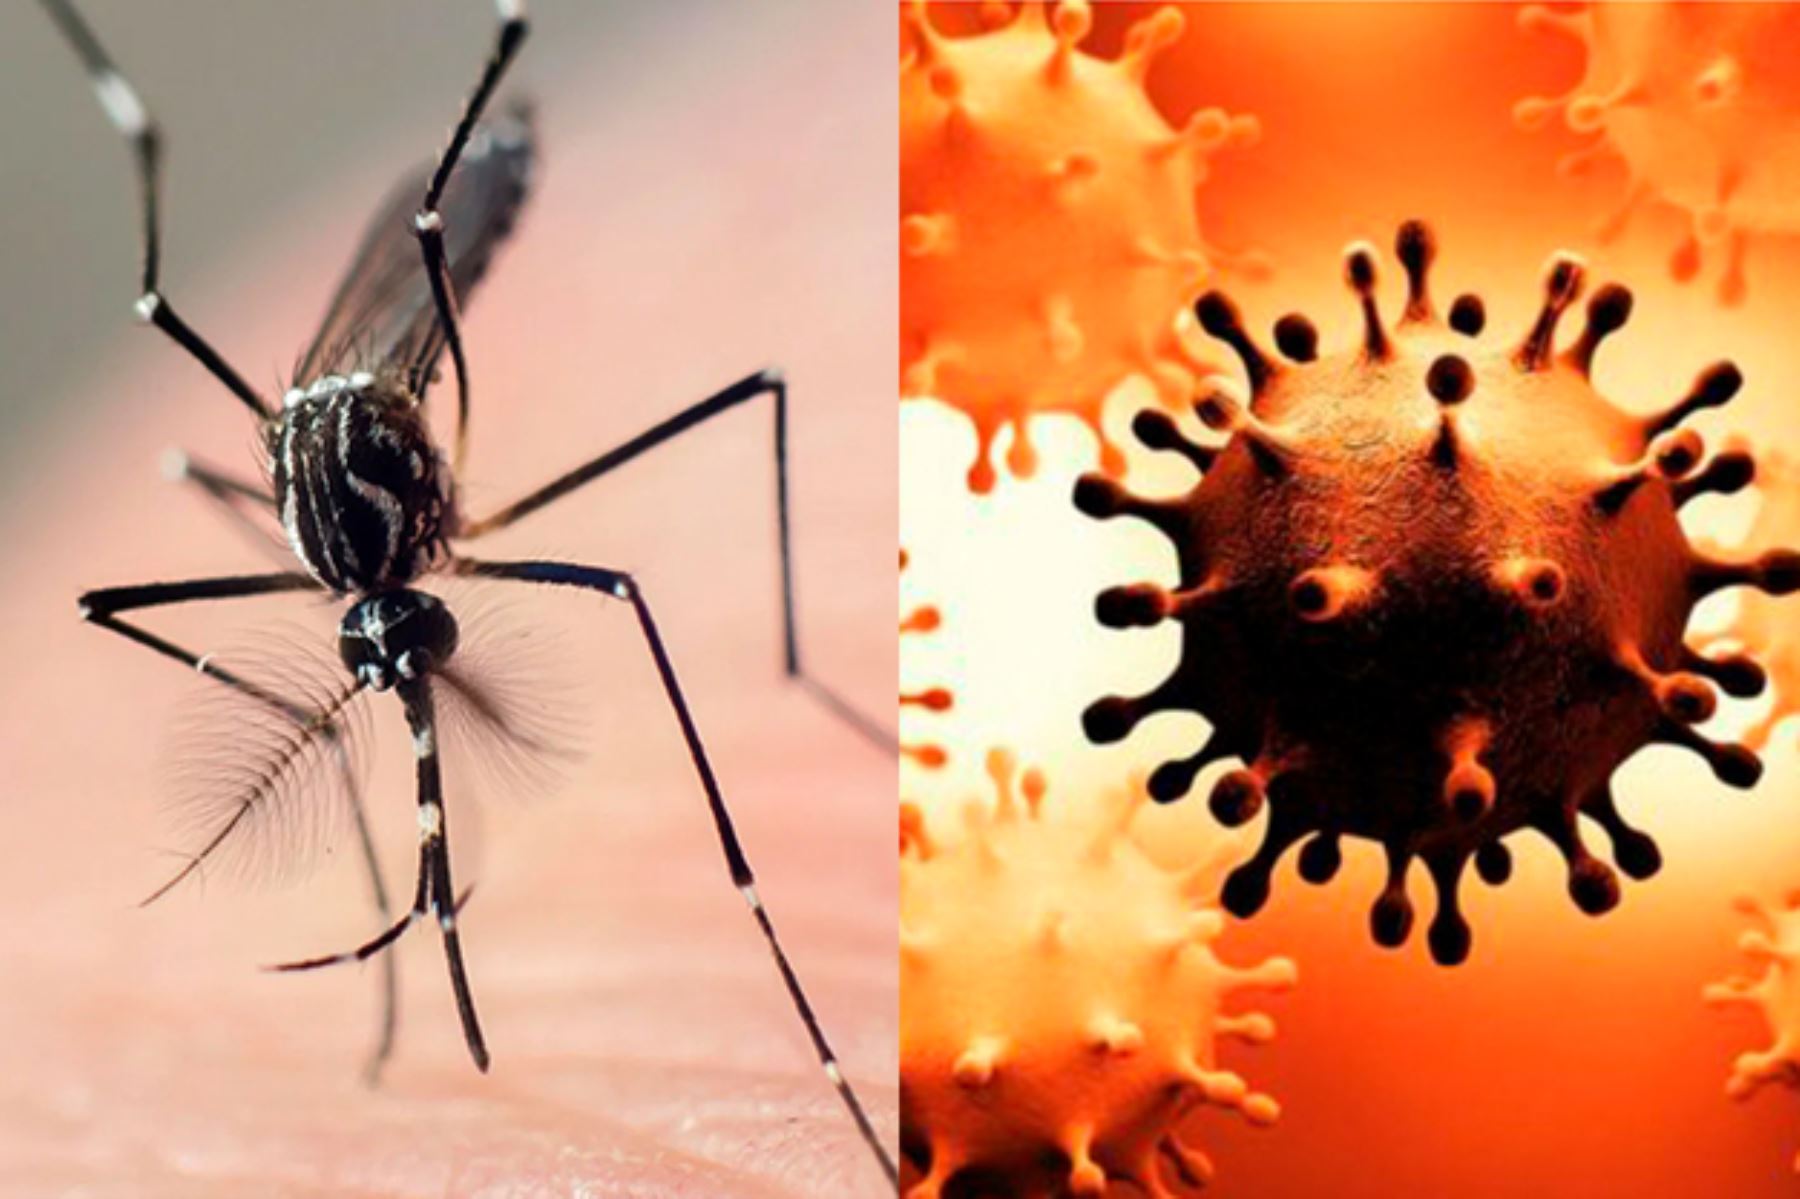 El dengue y el coronavirus presentan síntomas generalizados como malestar general, fiebre, dolor de cabeza, dolor muscular, entre otros. INTERNET/Medios